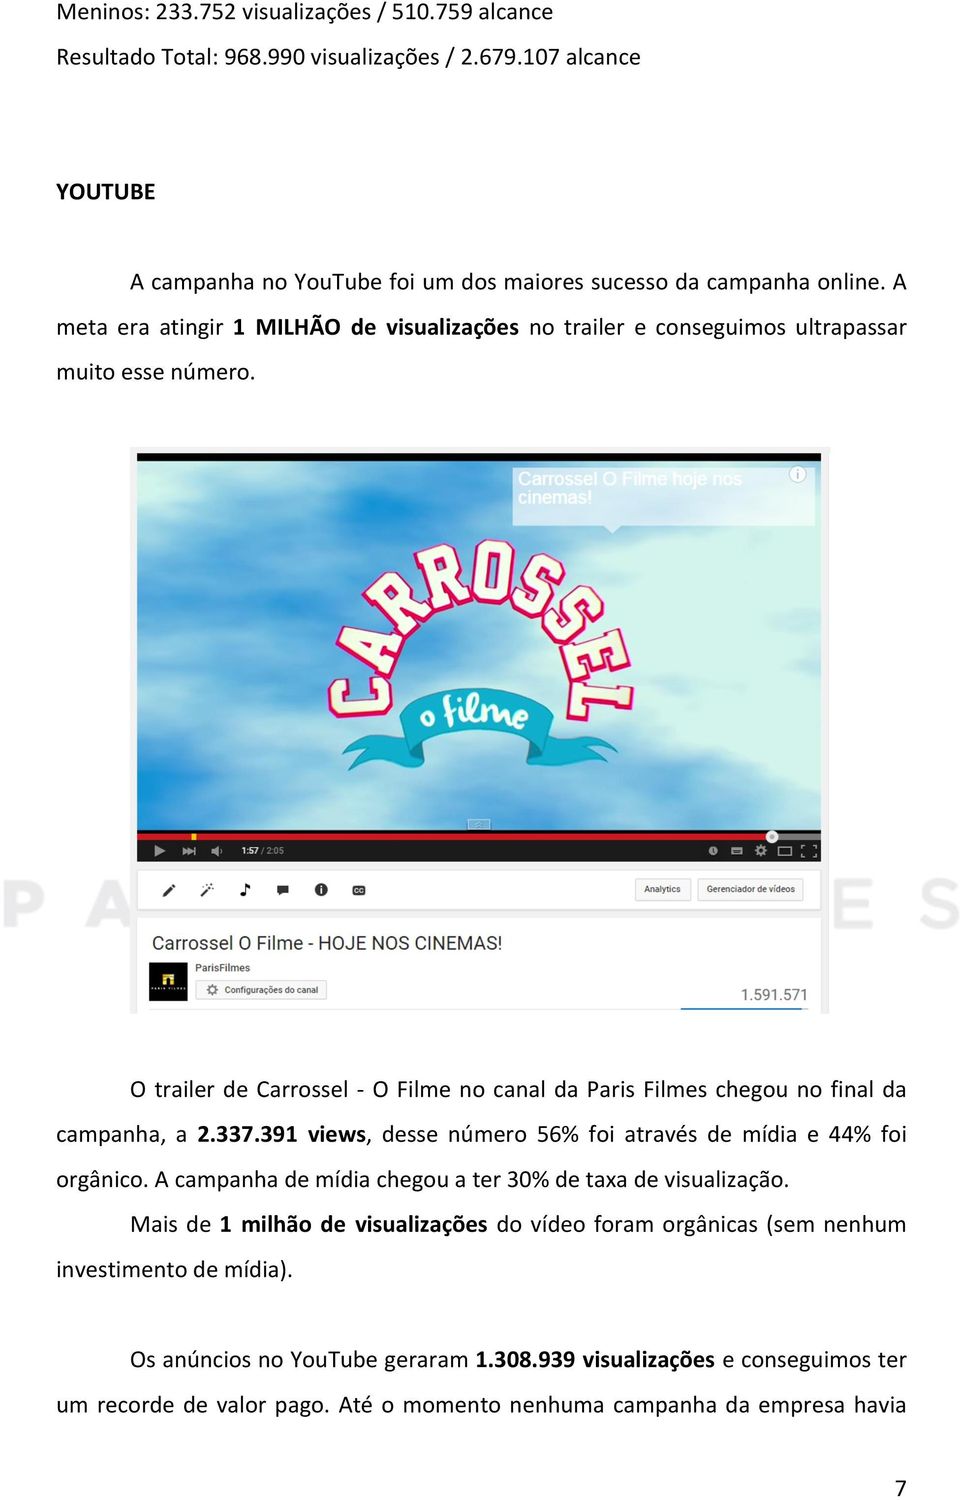 O trailer de Carrossel - O Filme no canal da Paris Filmes chegou no final da campanha, a 2.337.391 views, desse número 56% foi através de mídia e 44% foi orgânico.